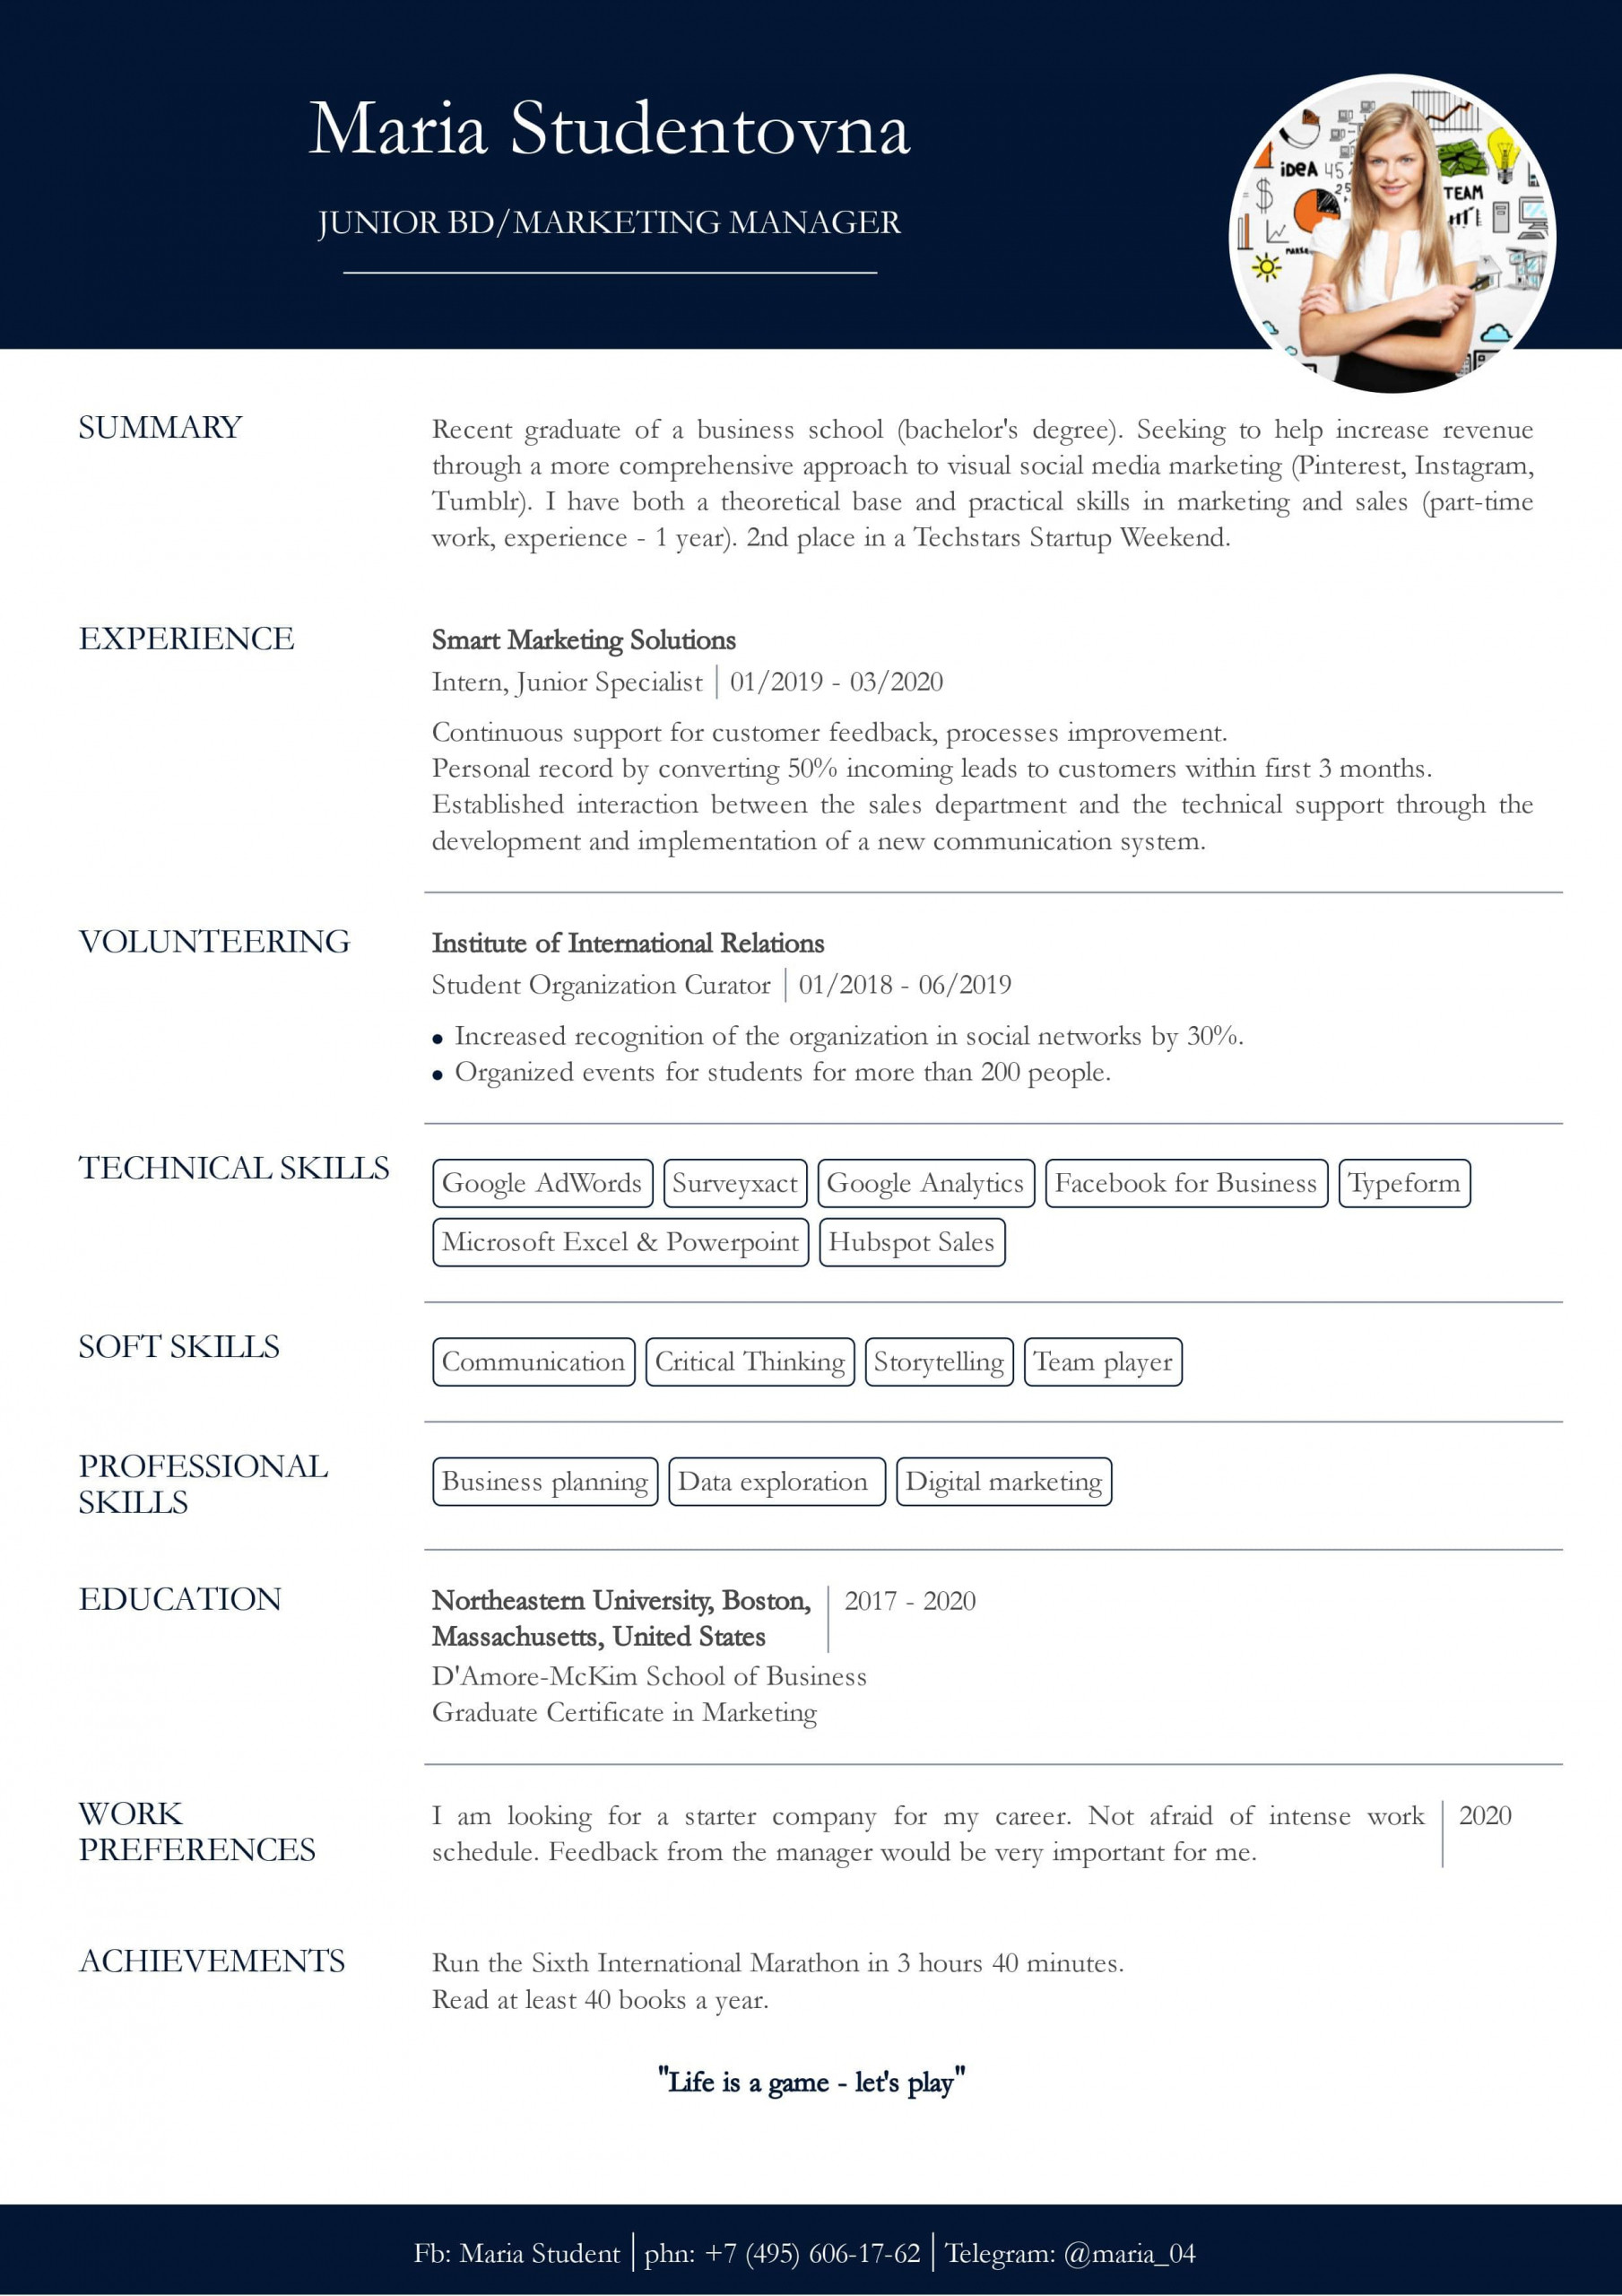 Sample Resume Objectives for No Work Experience Resume with No Work Experience. Sample for Students. – Cv2you Blog